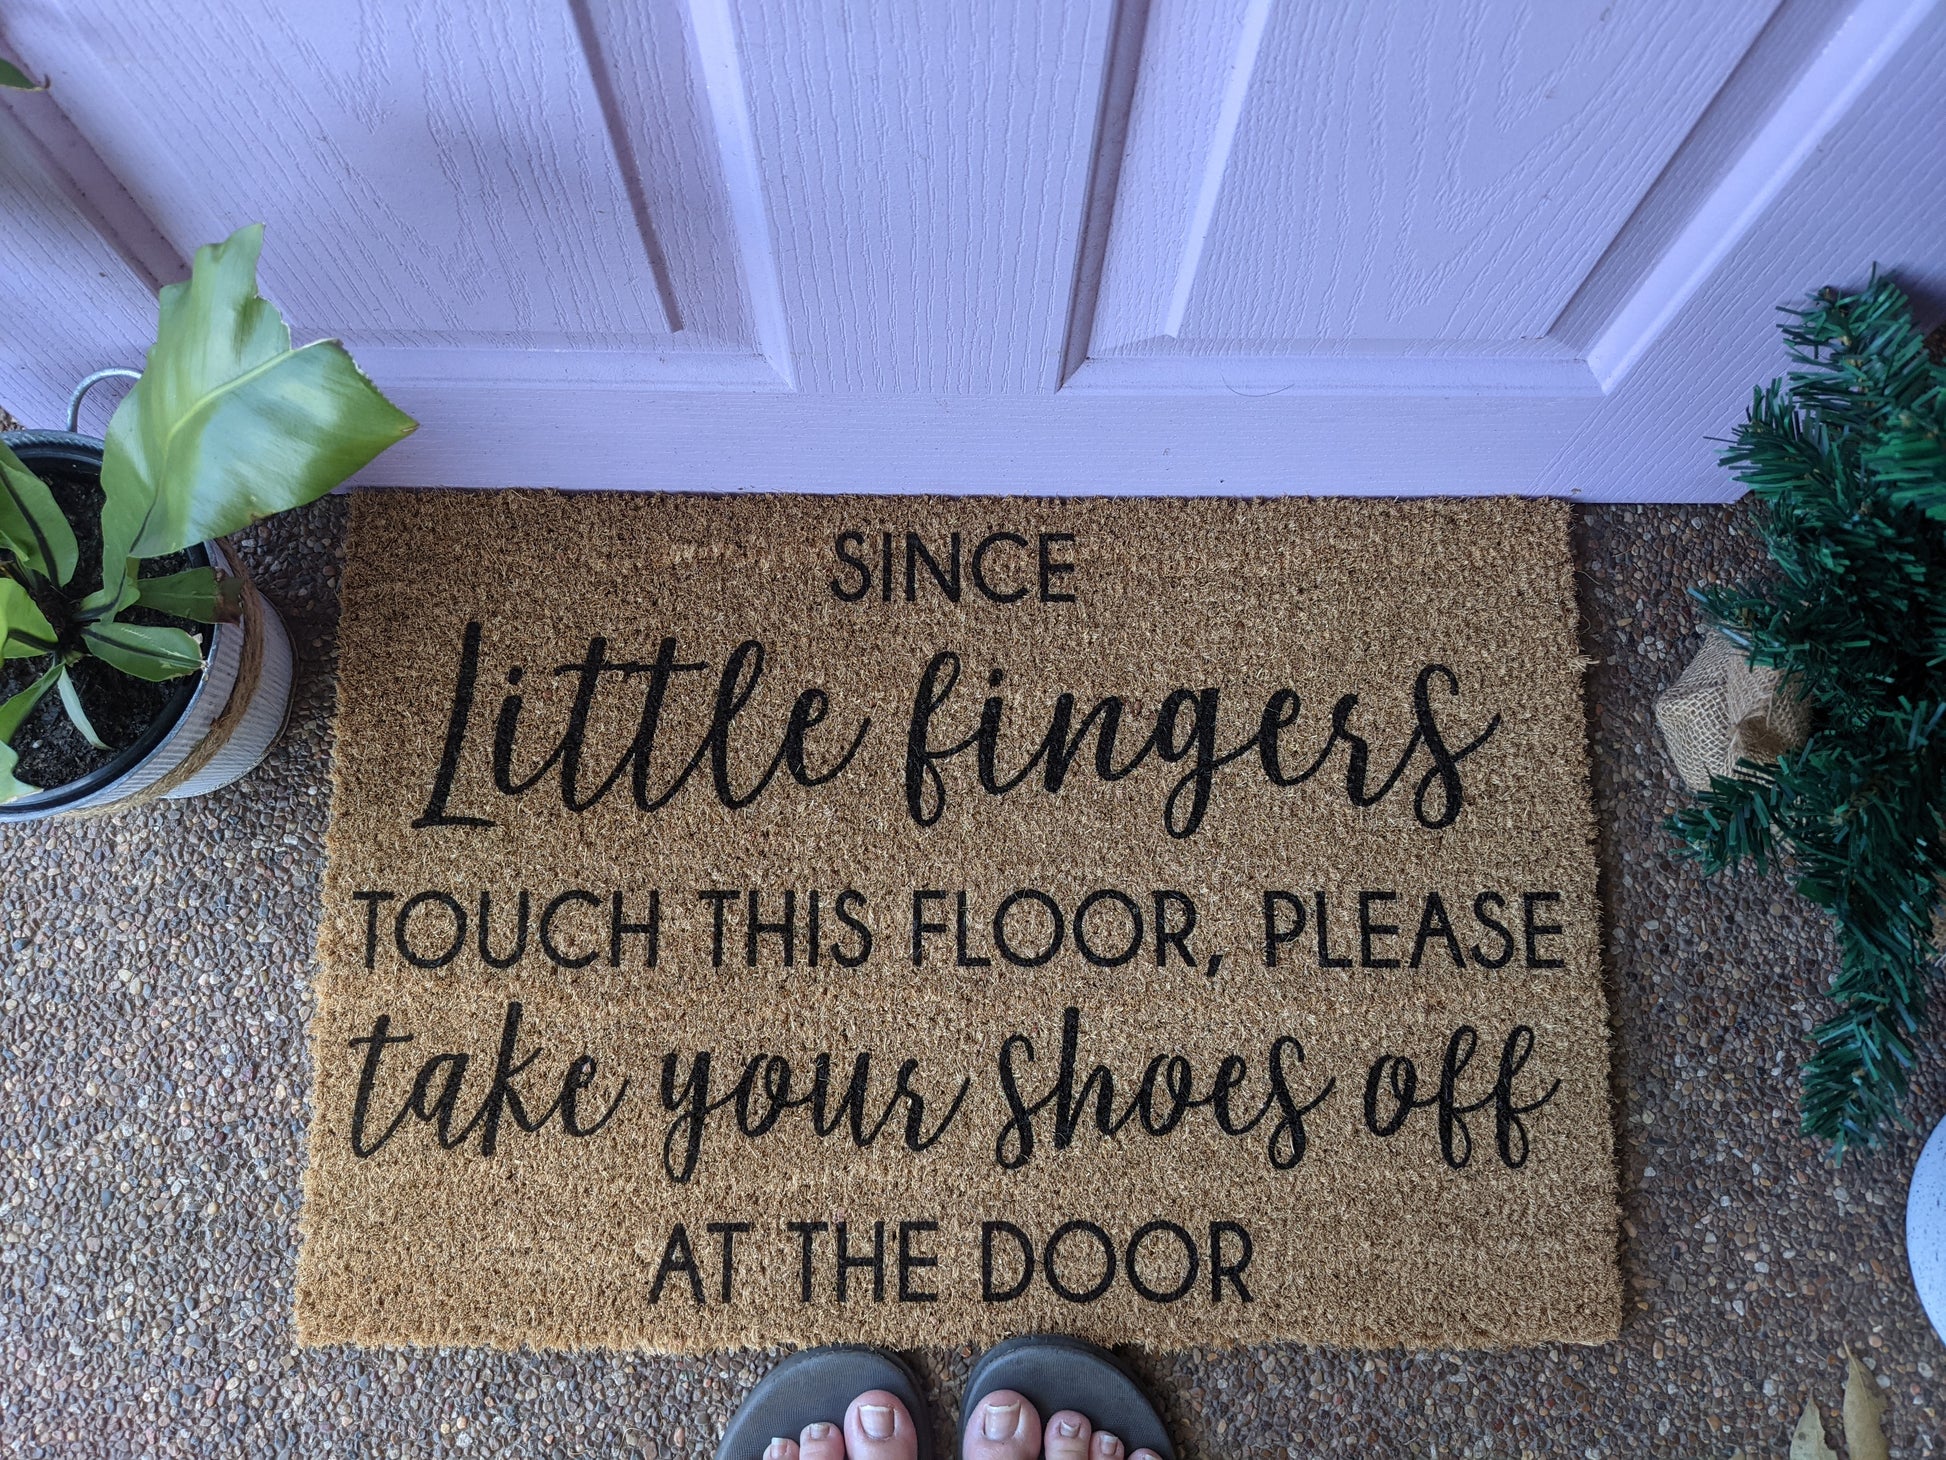 Little fingers touch this floor doormat